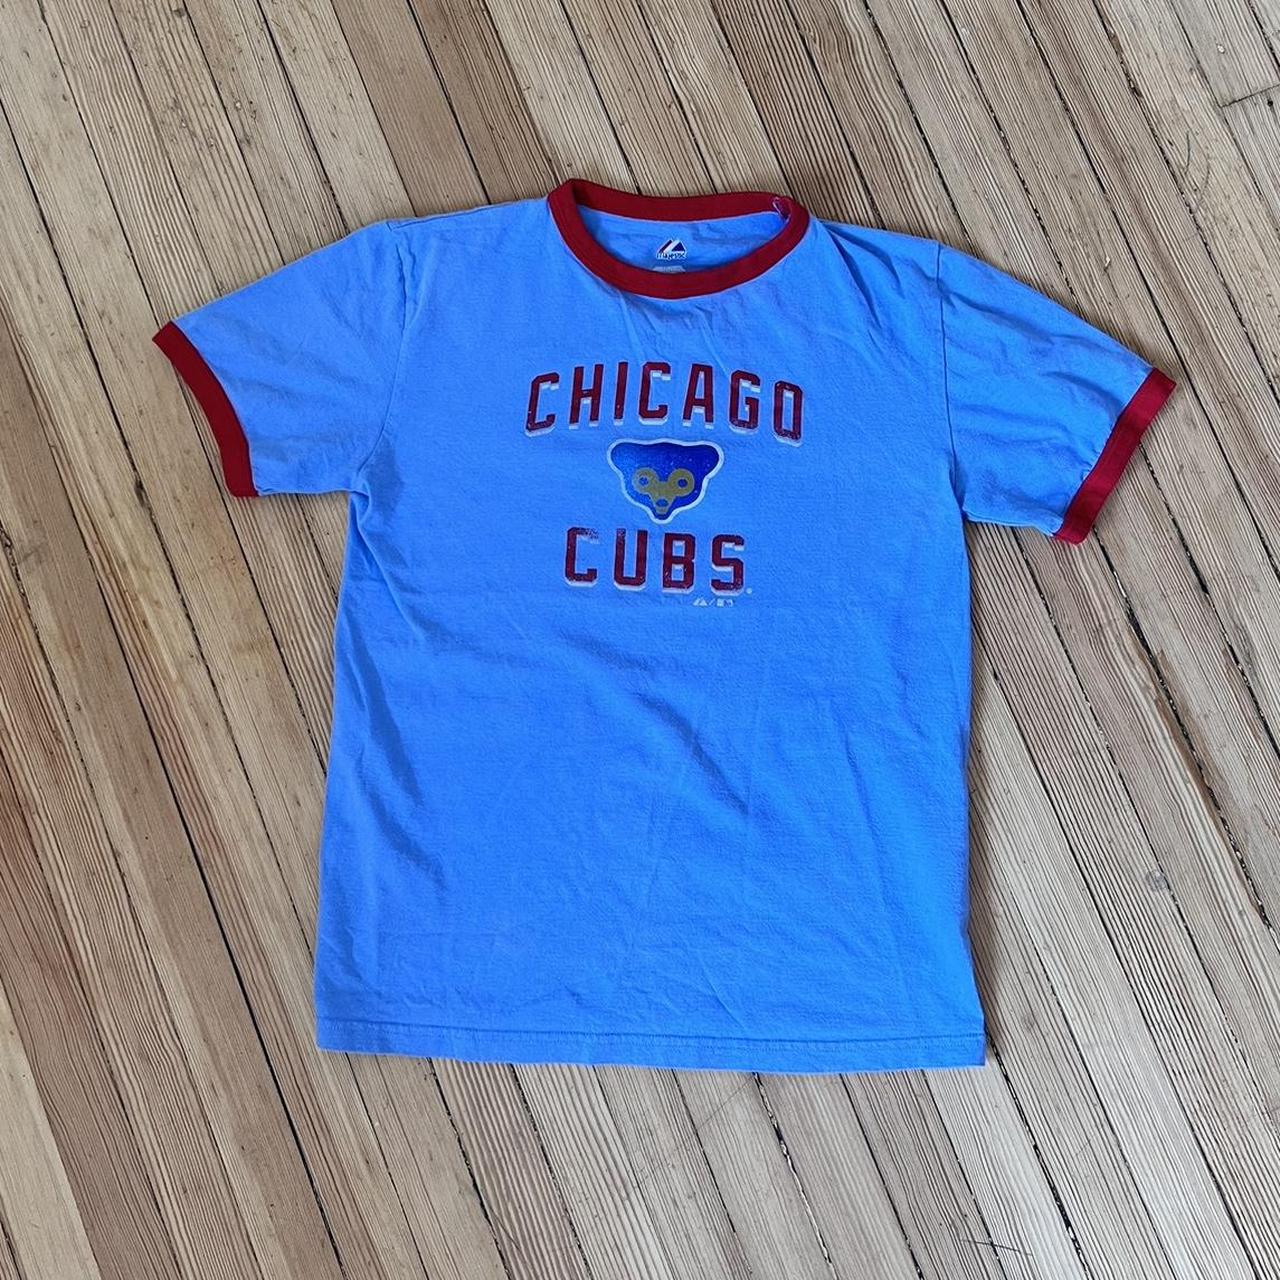 Vintage Chicago Cubs Tee hard to find item, red - Depop